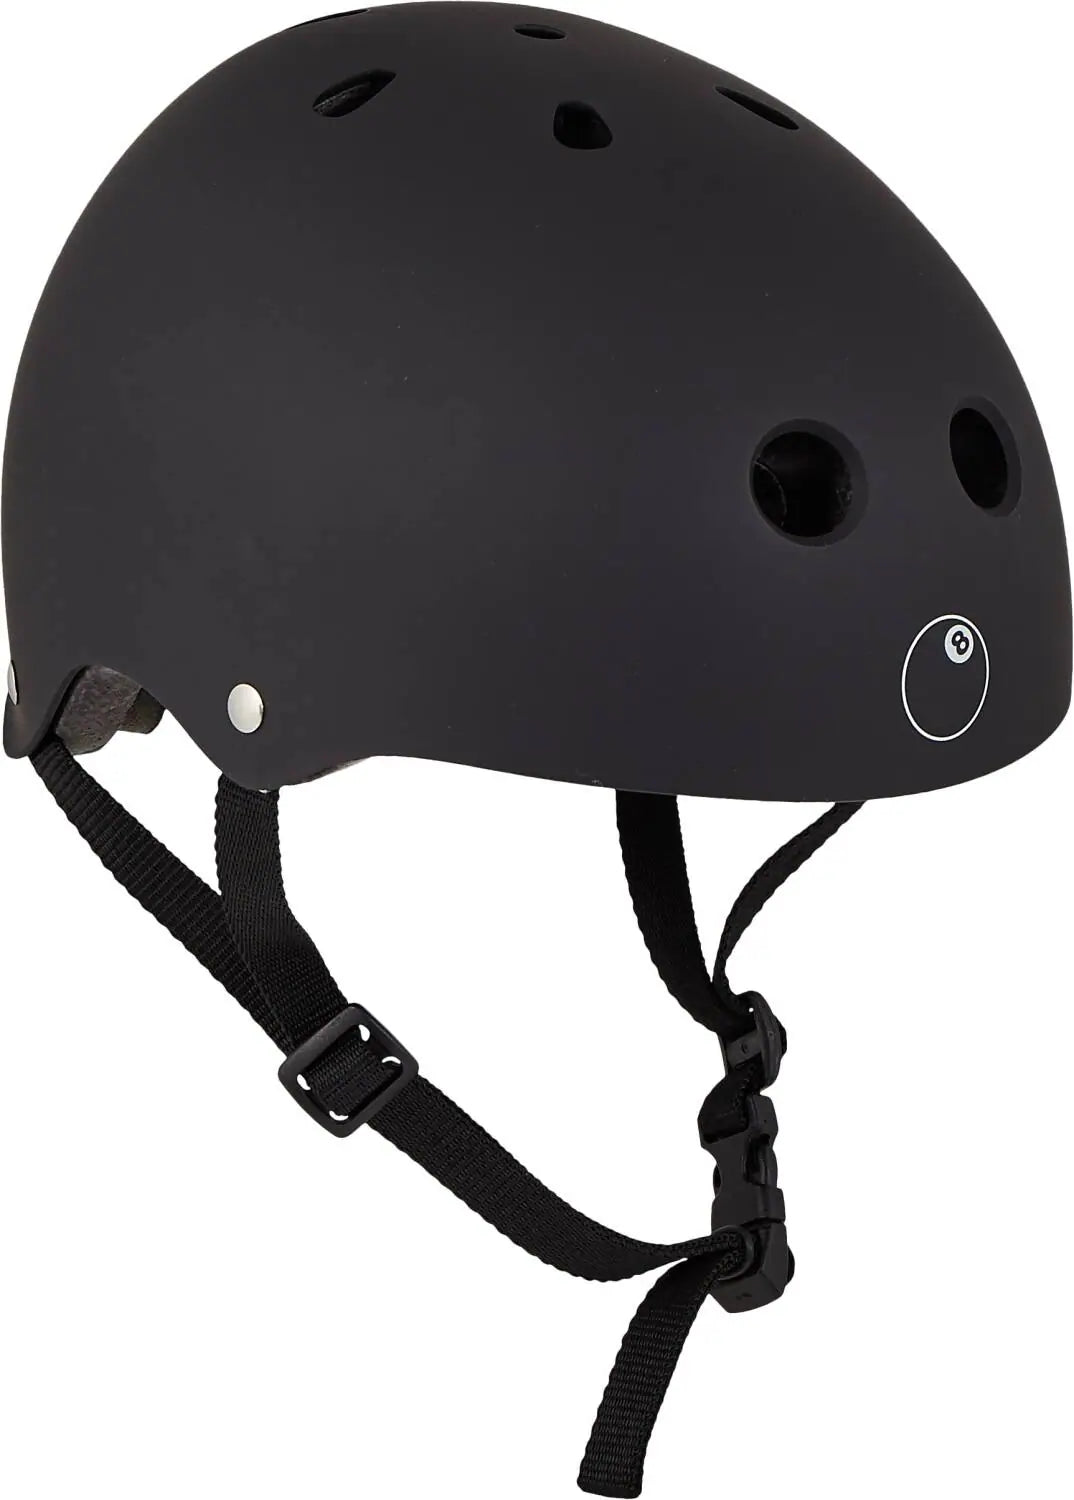 Eight Ball Skate Helmet (Black)